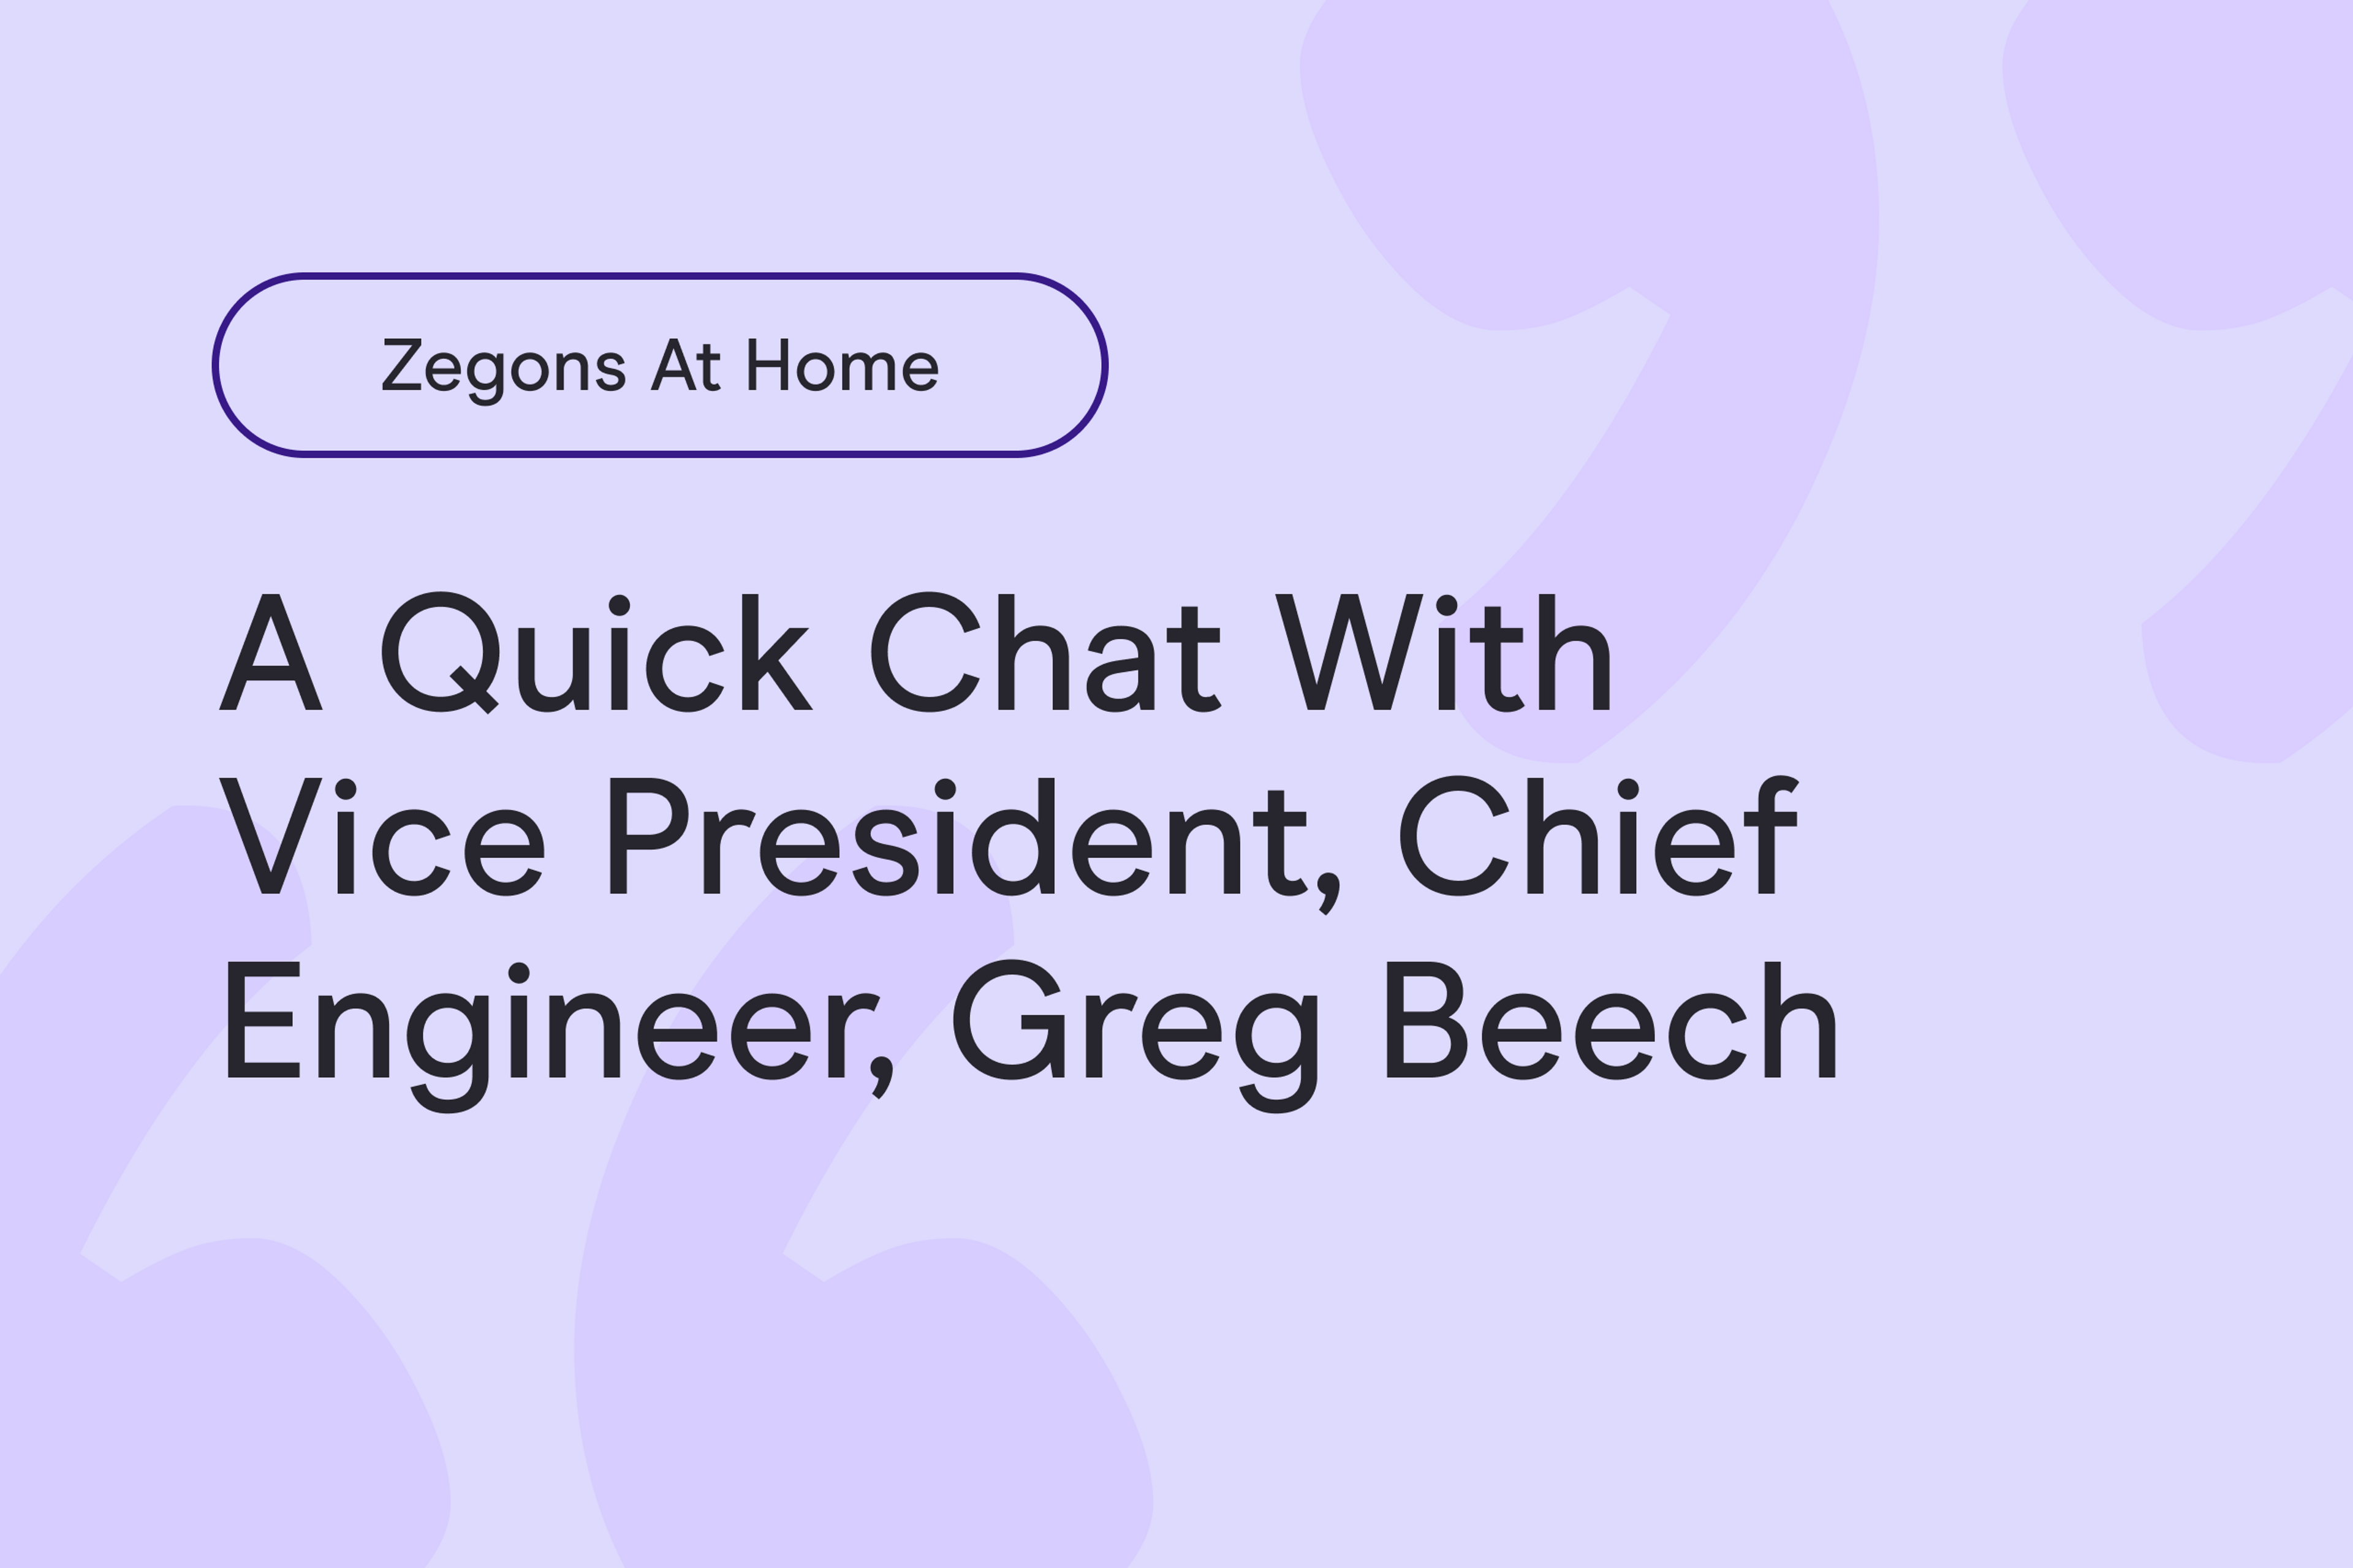 Zegons From Home: Greg Beech